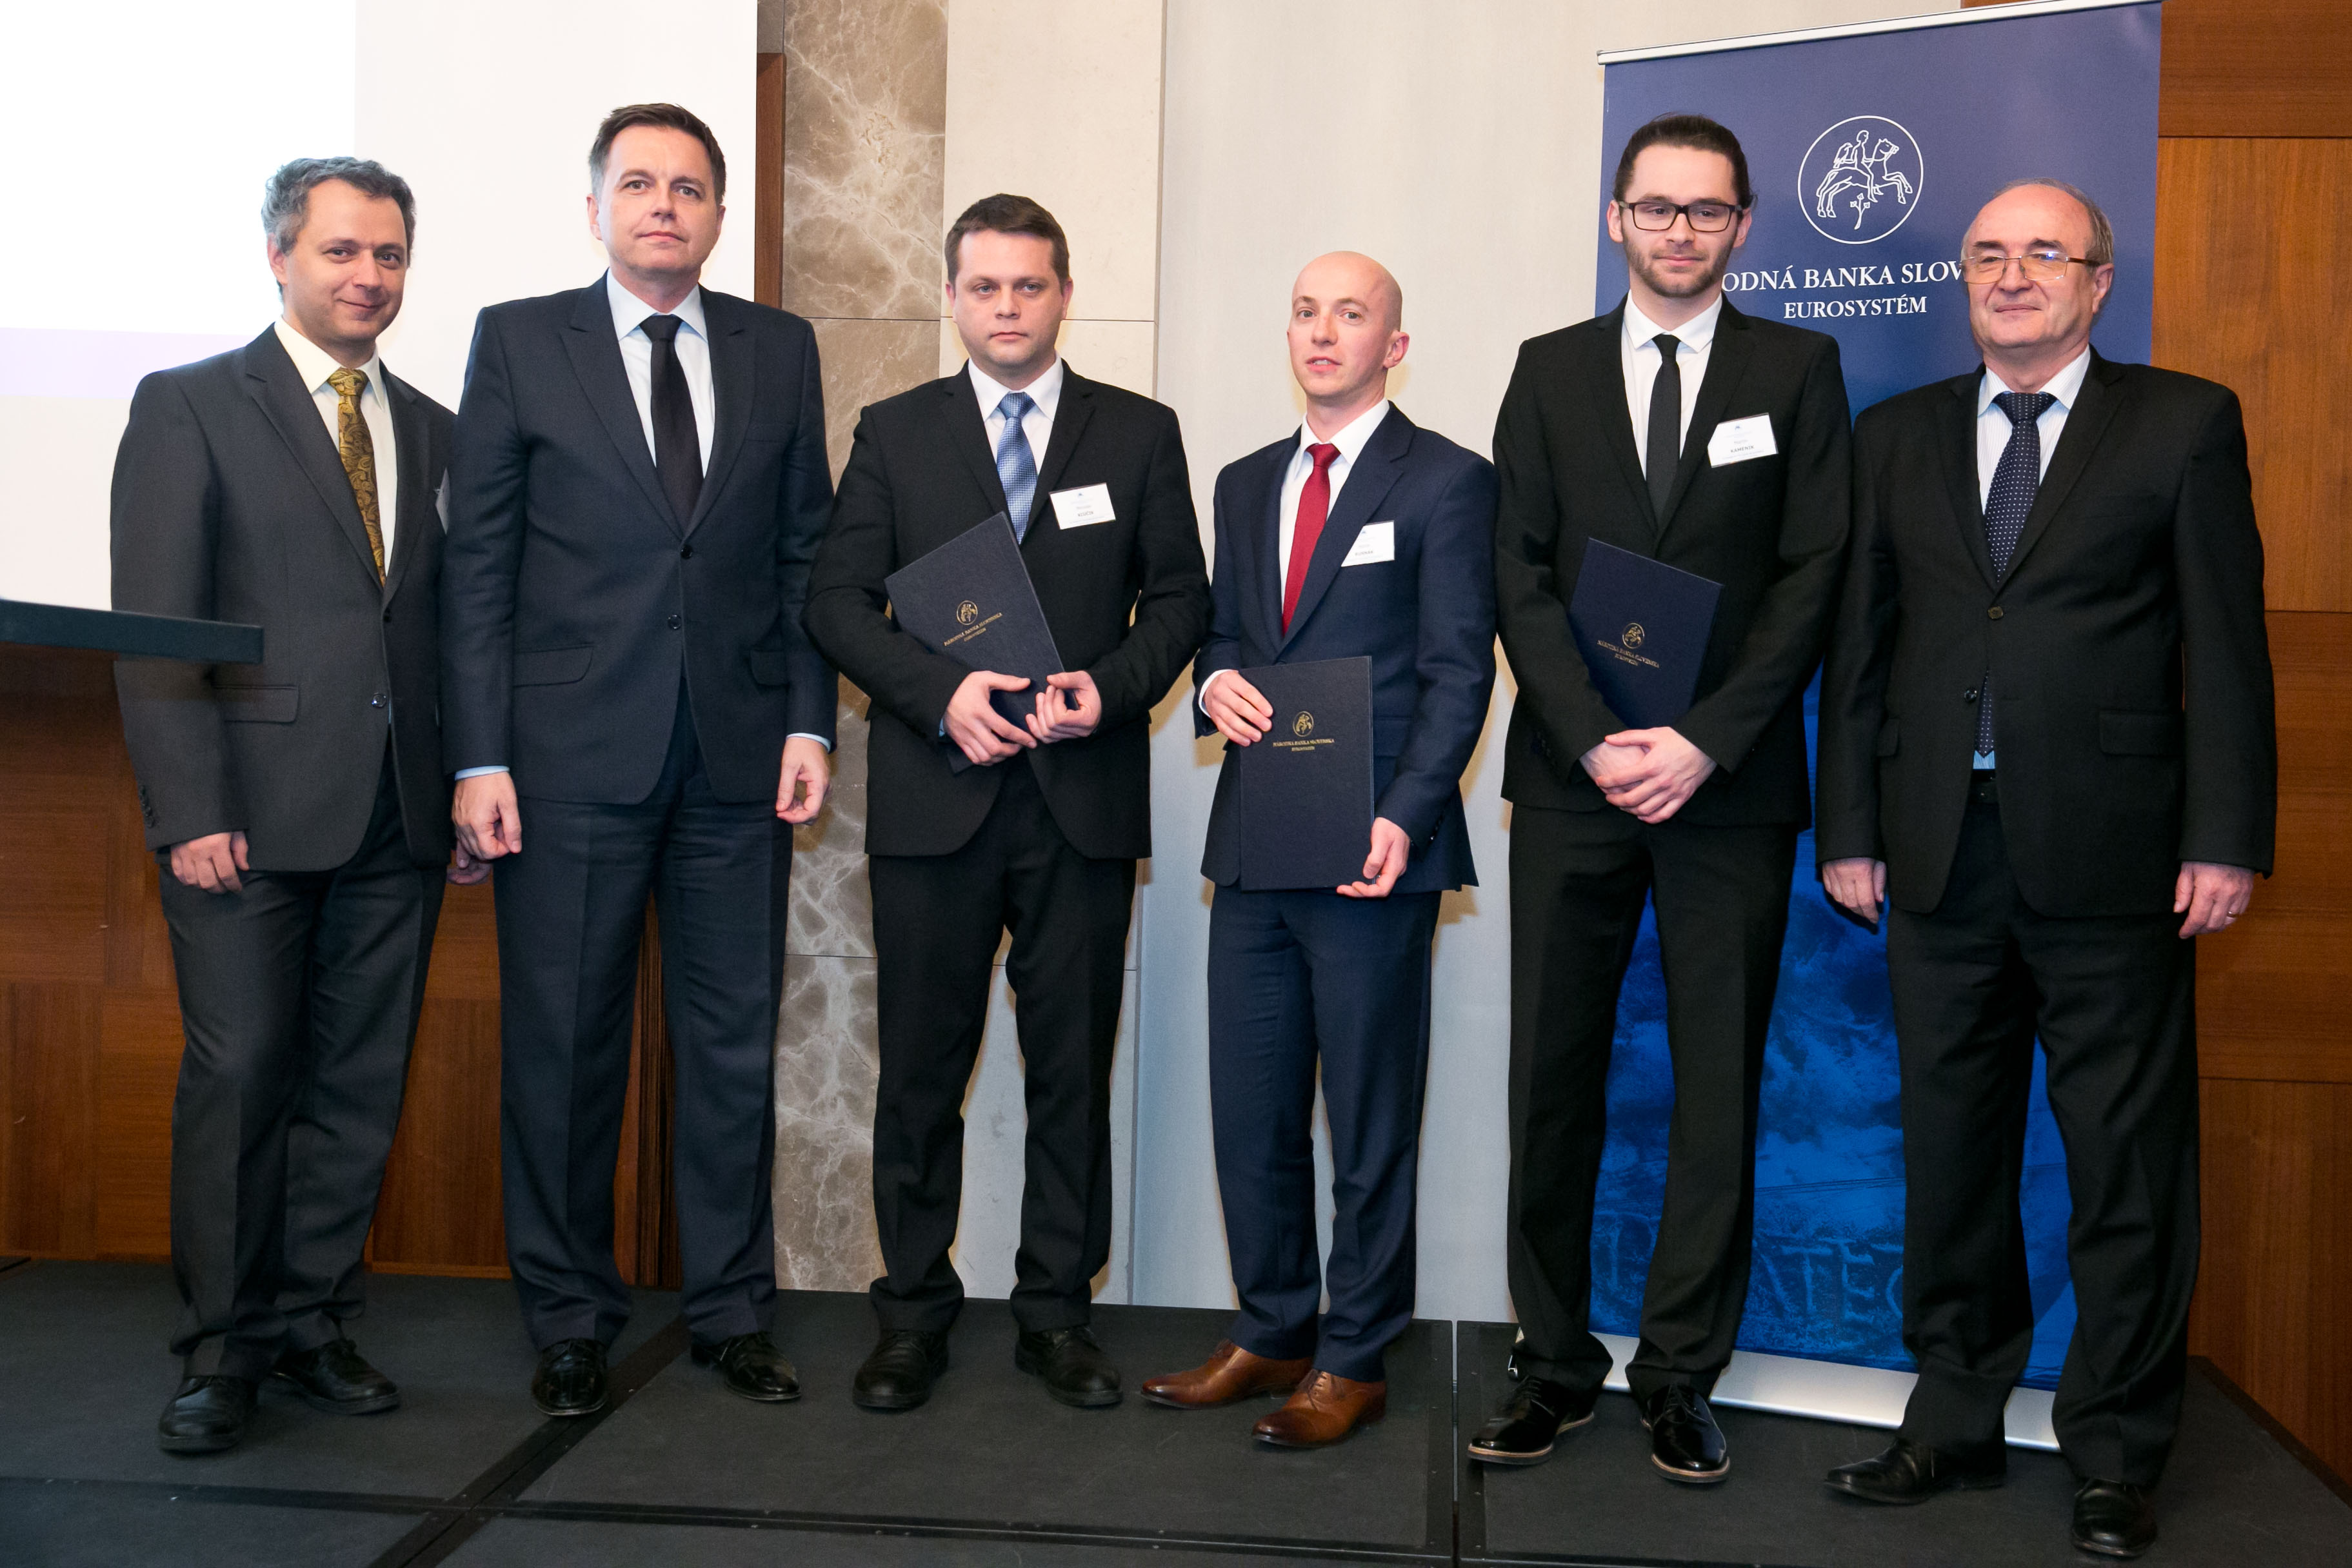 From right: Jozef Makúch (NBS Governor), Martin Kameník (2nd place), Marek Rusnák (1st place), Miroslav Kľúčik (3rd place), Peter Kažimír (Minister of Finance of the SR), Martin Šuster (NBS)